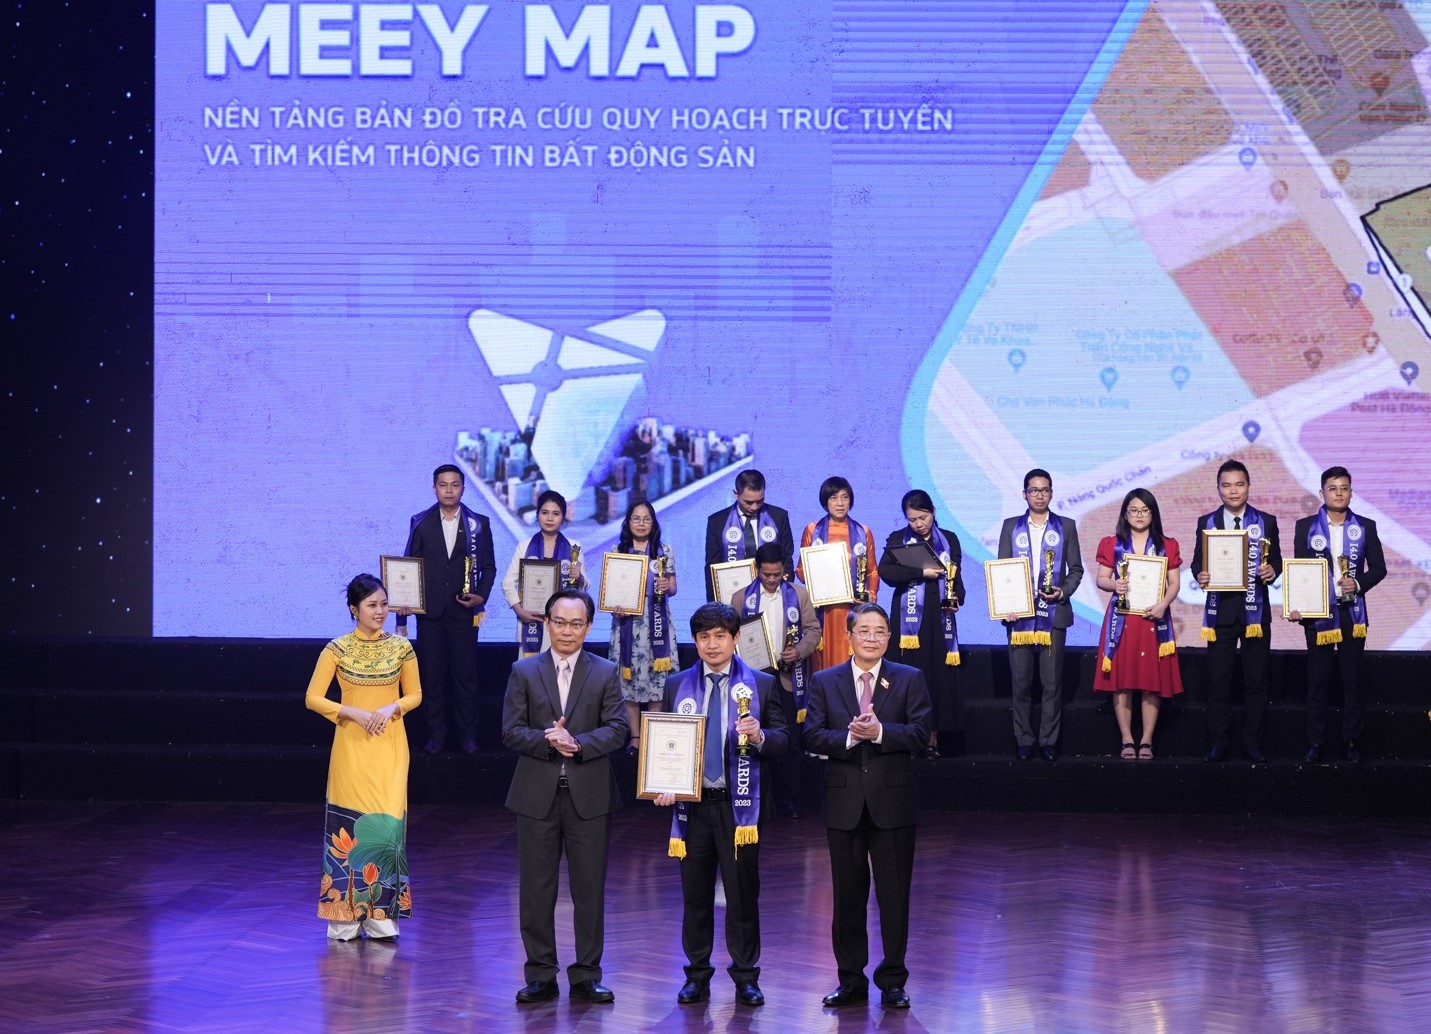 Kinh doanh - Nền tảng bản đồ tra cứu quy hoạch mới nhất Meey Map xuất sắc gặt hái thêm giải thưởng